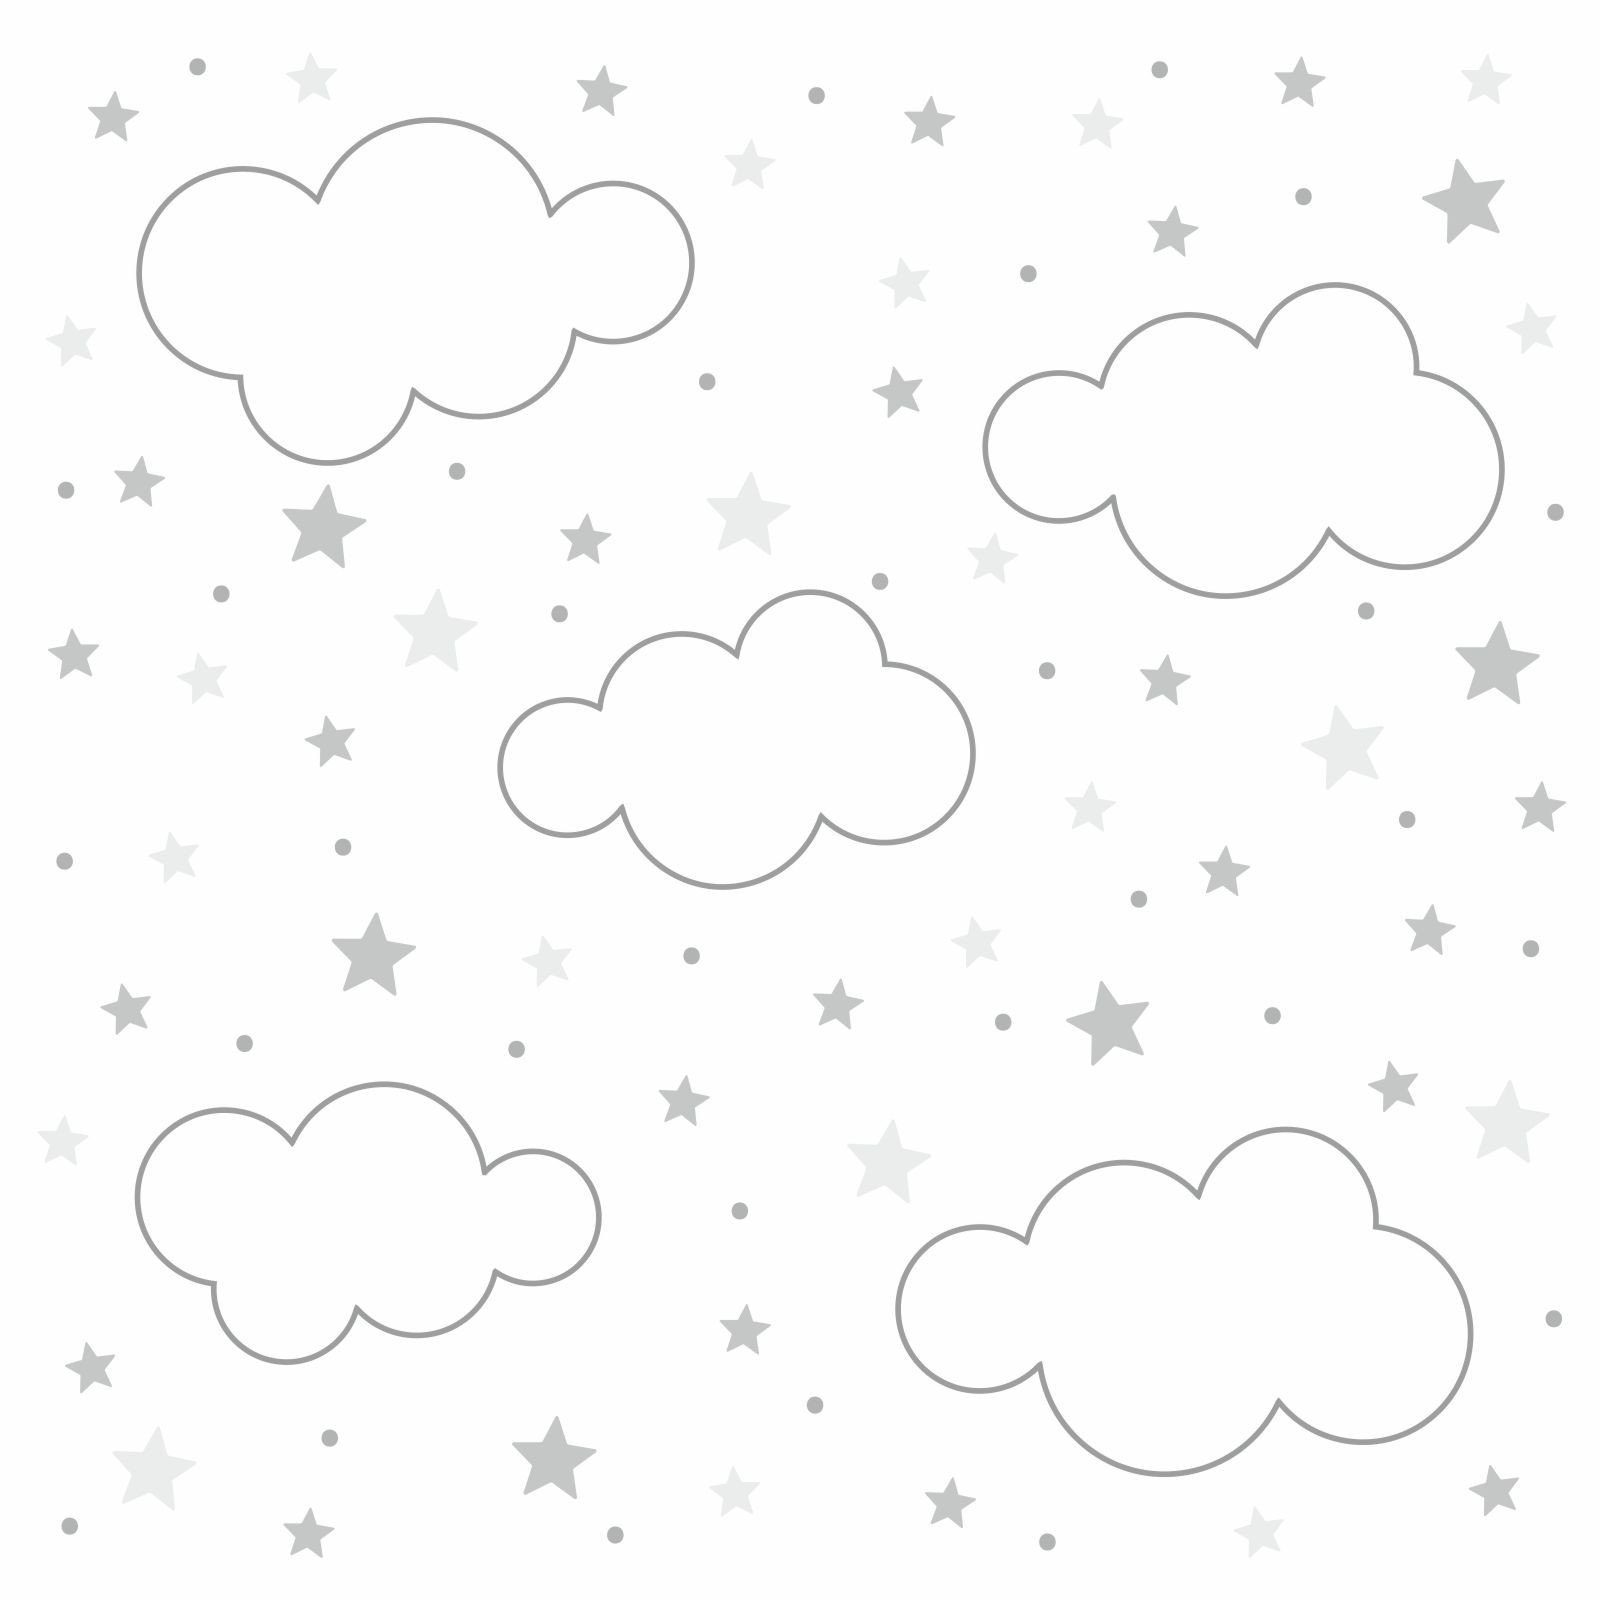 nikima Wandtattoo »143 Wolken, Sterne und Punkte Set grau weiß«, 87 Stück  in 6 vers. Größen online kaufen | OTTO